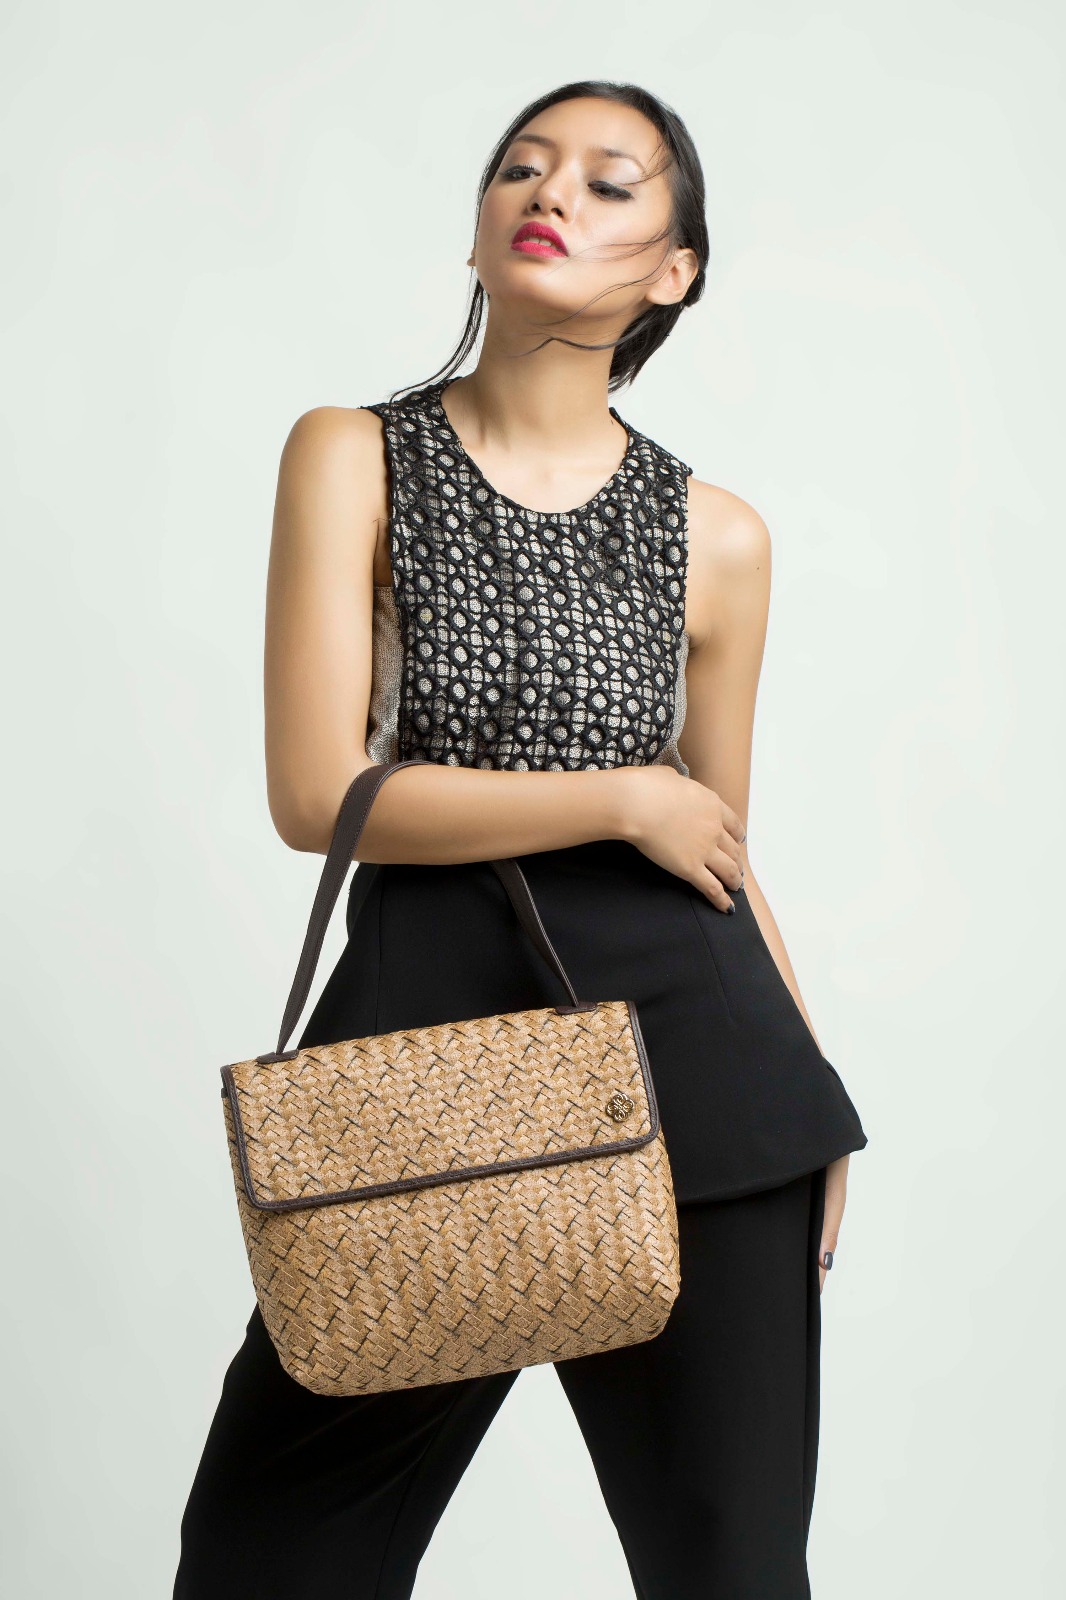 Foto: Model sedang memperagakan tas Chameo Couture/Dok: indotrading.com